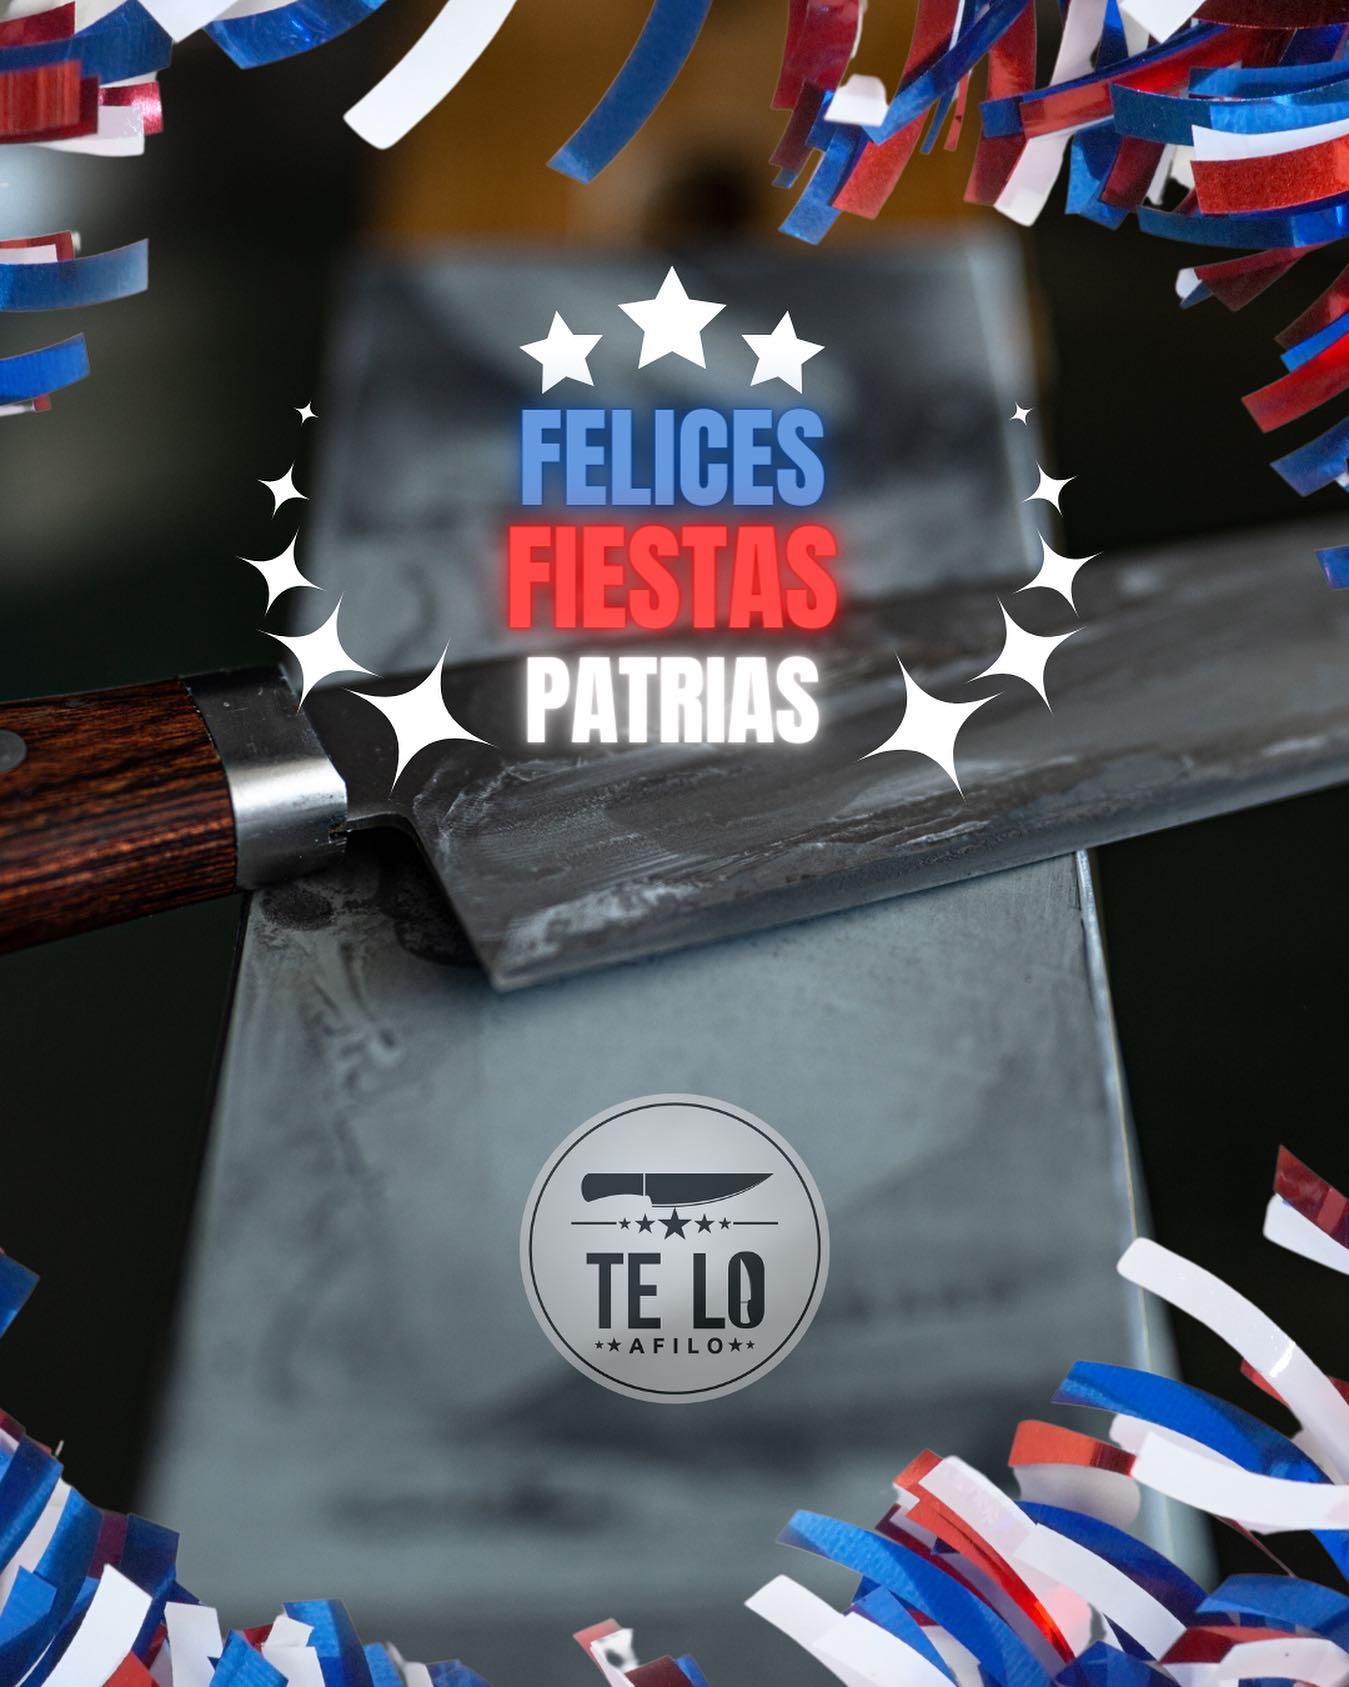 Muy felices fiestas patrias!!!!. A disfrutar de manera responsable con todos sus seres queridos!!!!
Viva Chile!!!🇨🇱🇨🇱🇨🇱

.
.
.
#teloafilo #afilado #cuchillo #piedra #filo #cocina #cuchillosjaponeses #cocinero #restaurant #chef #santiago #chile #instachile #chilegram #corte #afilador #gastronomia #whetstone #sharpening #knives #edge #sharp #grind